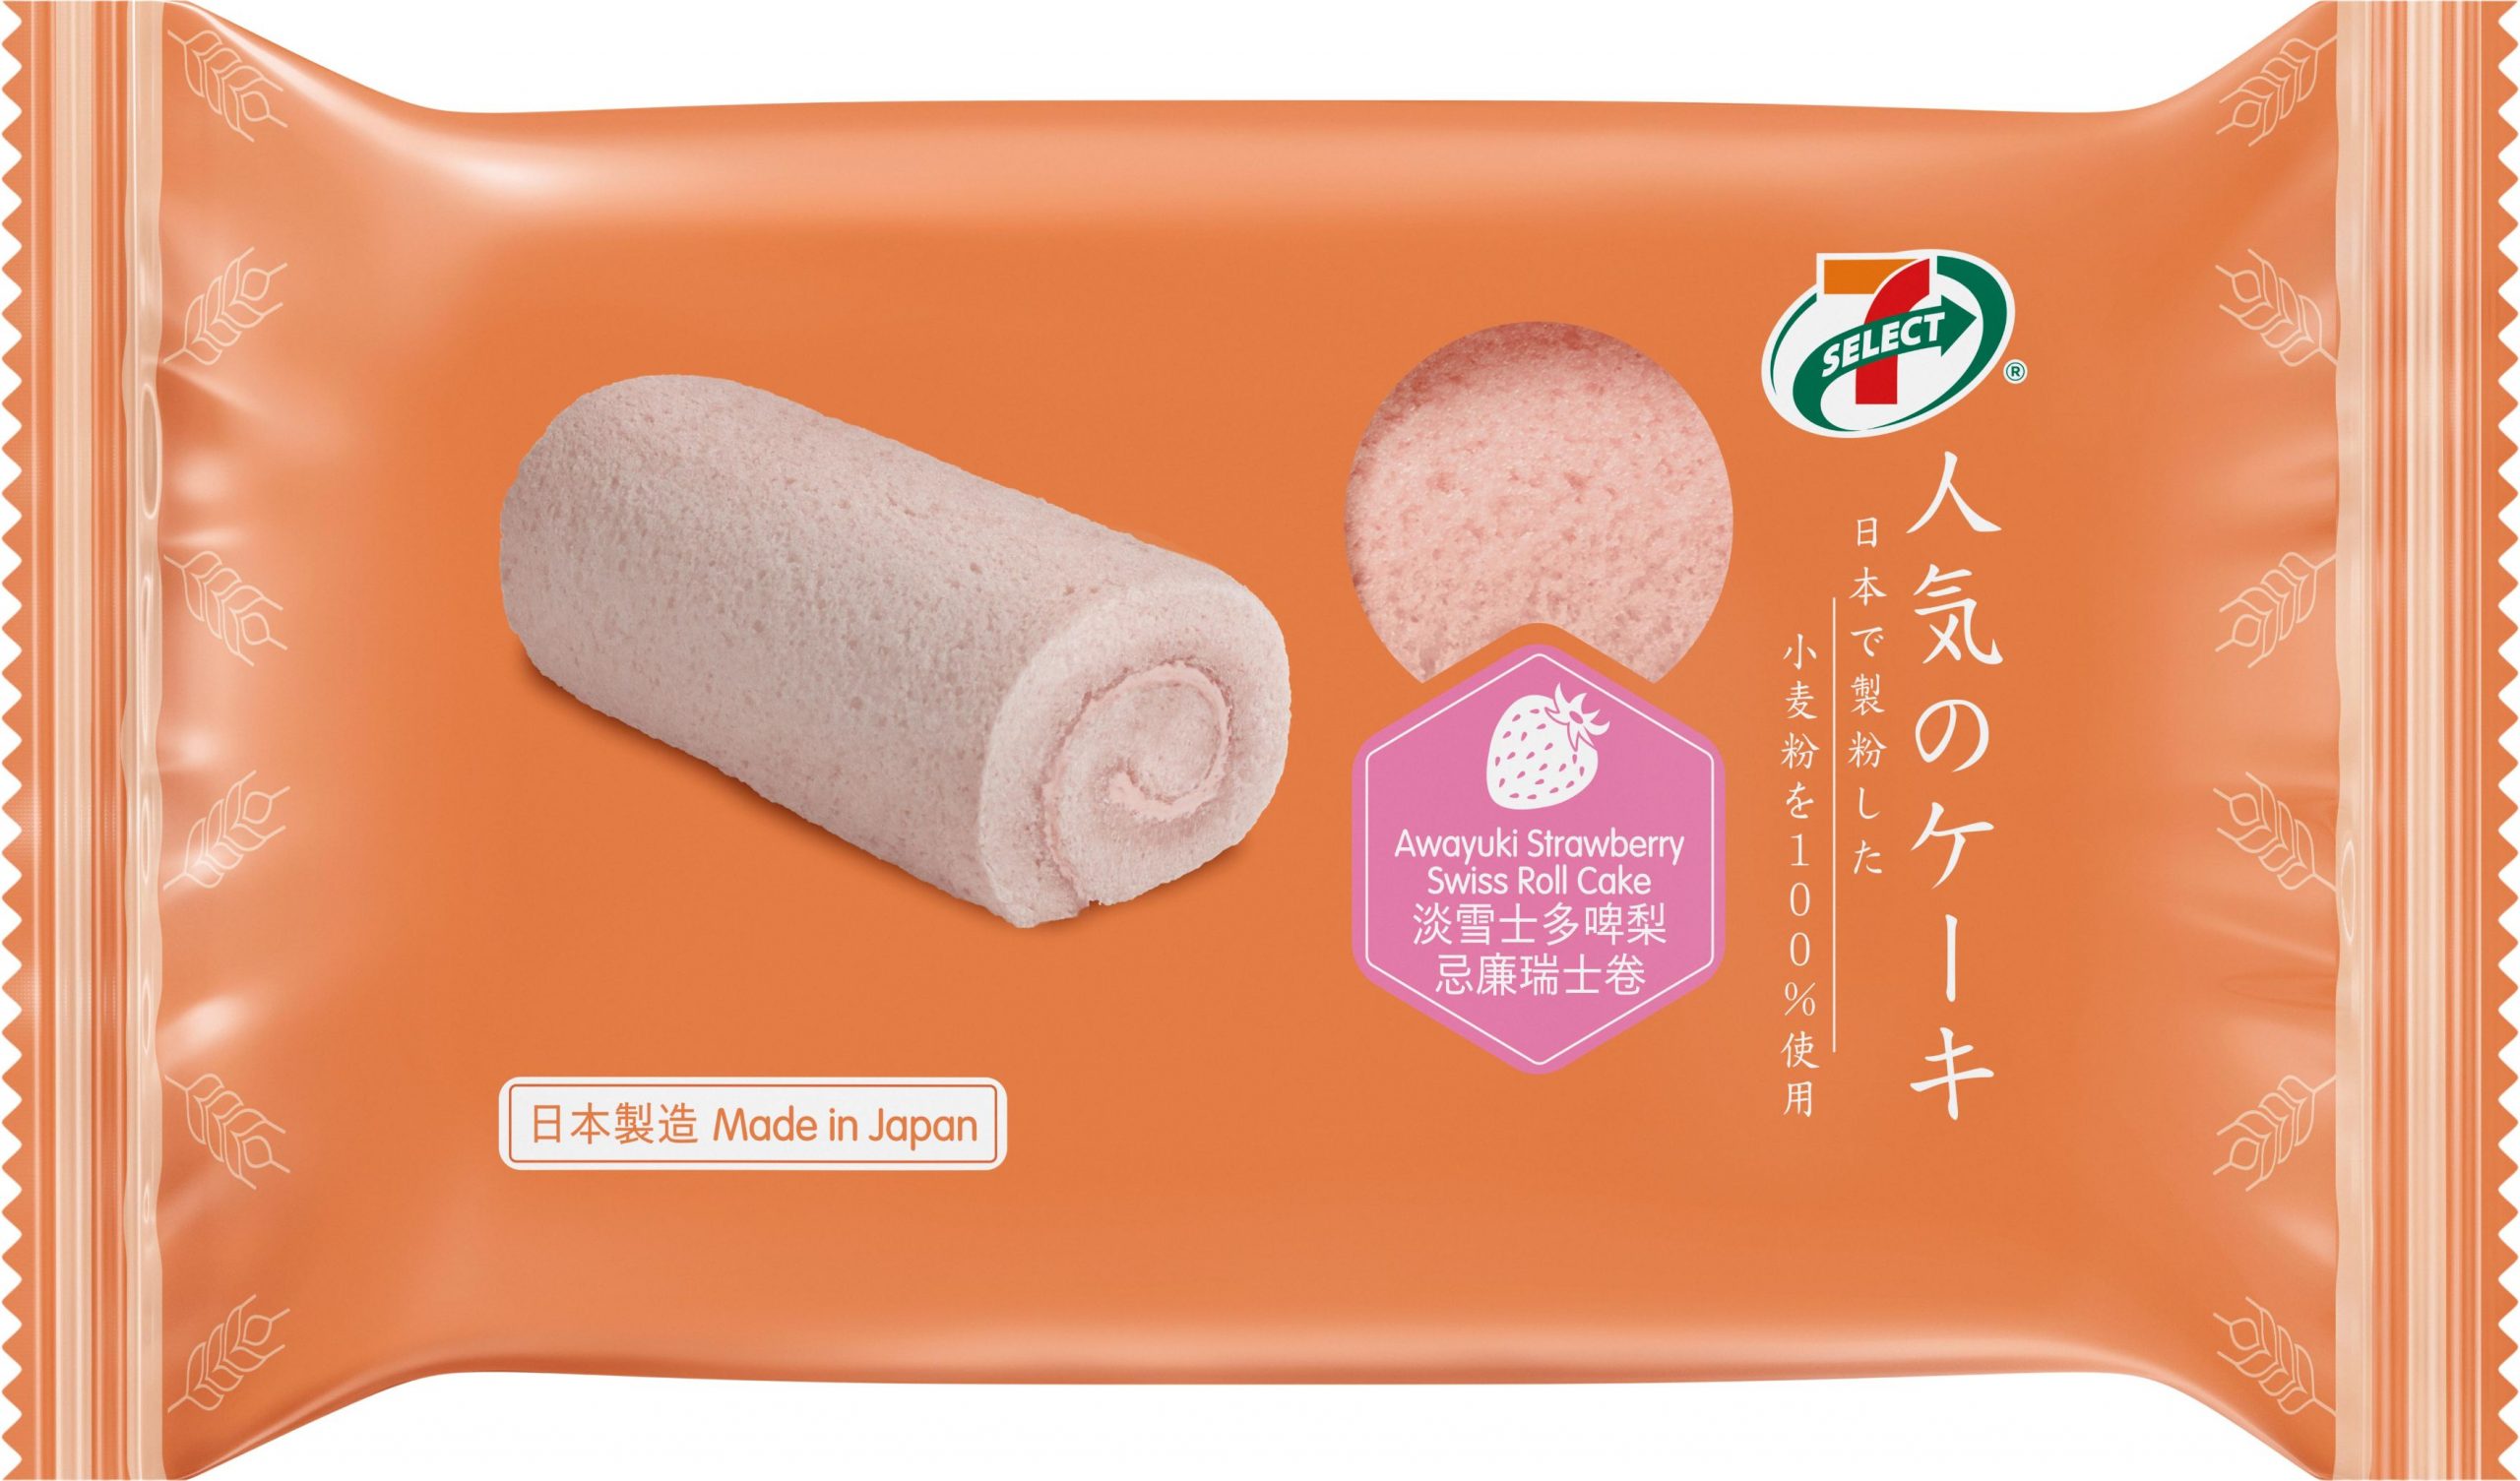 7-SELECT日本直送淡雪士多啤梨系列甜品登場<br>期間限定3款甜品 為你帶來冬日甜蜜滋味